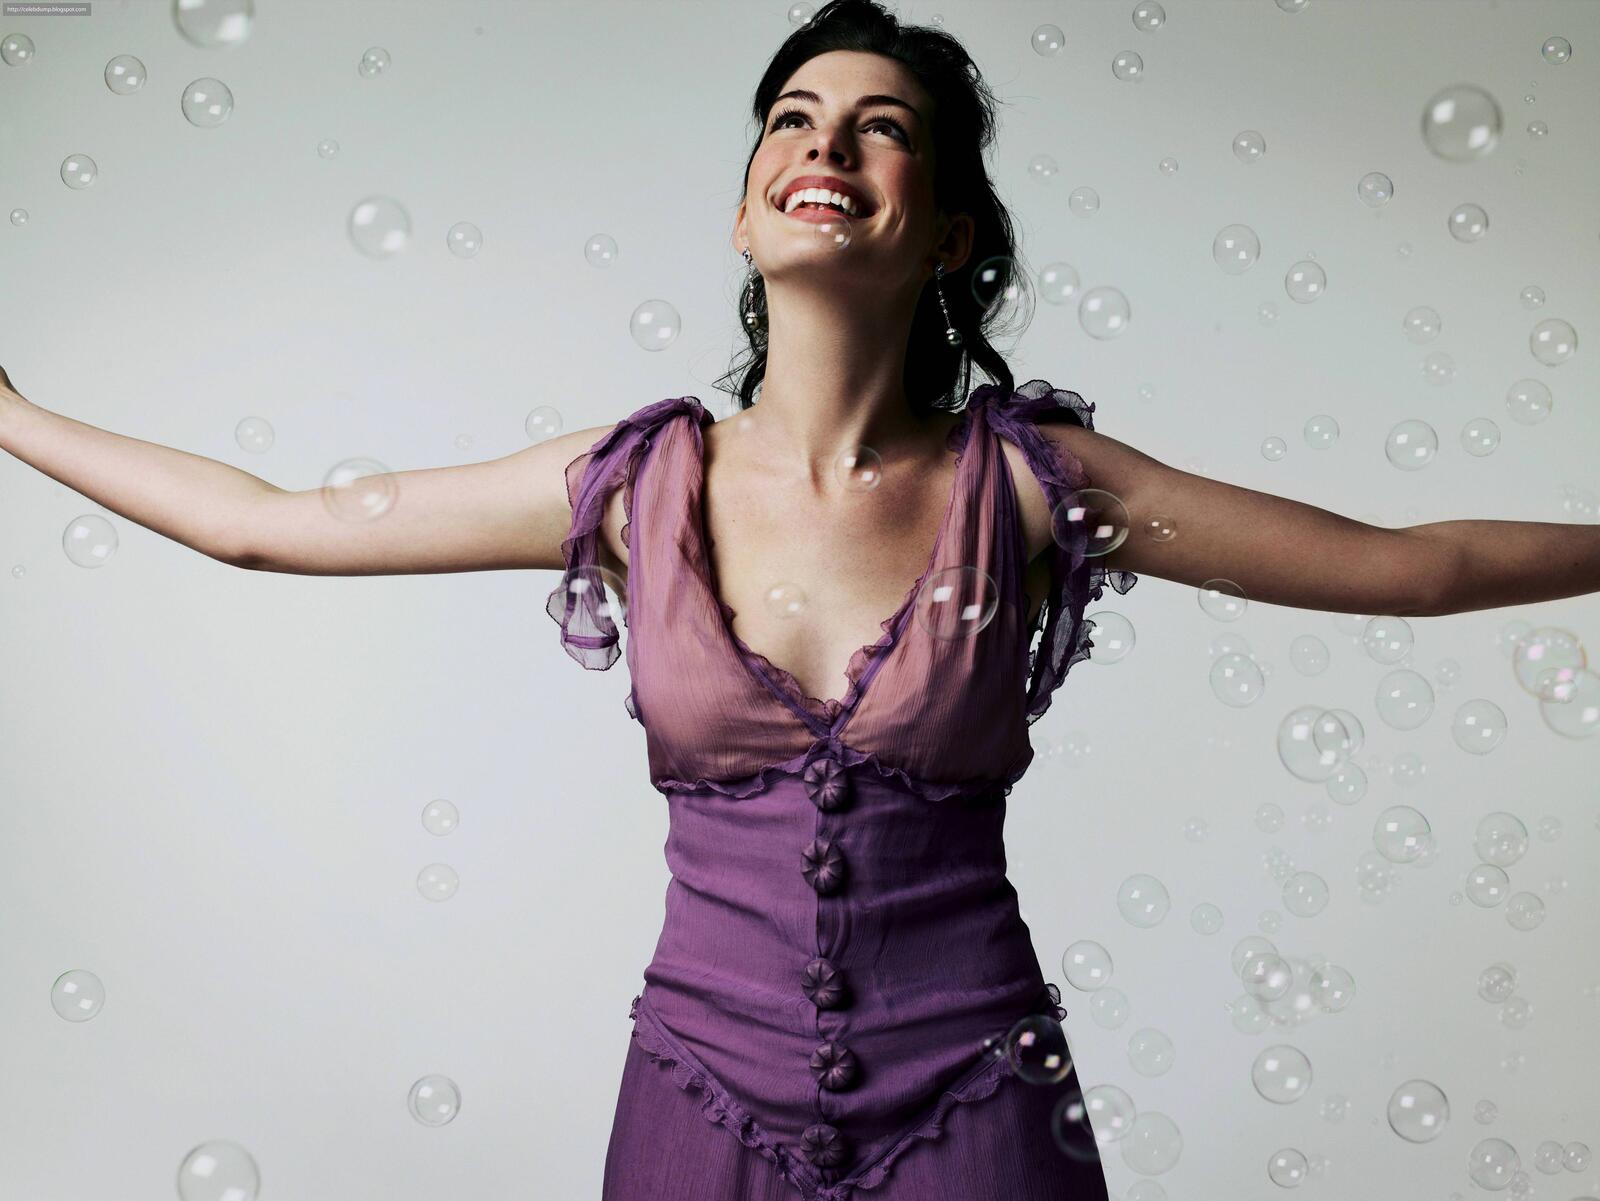 Бесплатное фото Энн Хэтэуэй радуется мыльным пузырям